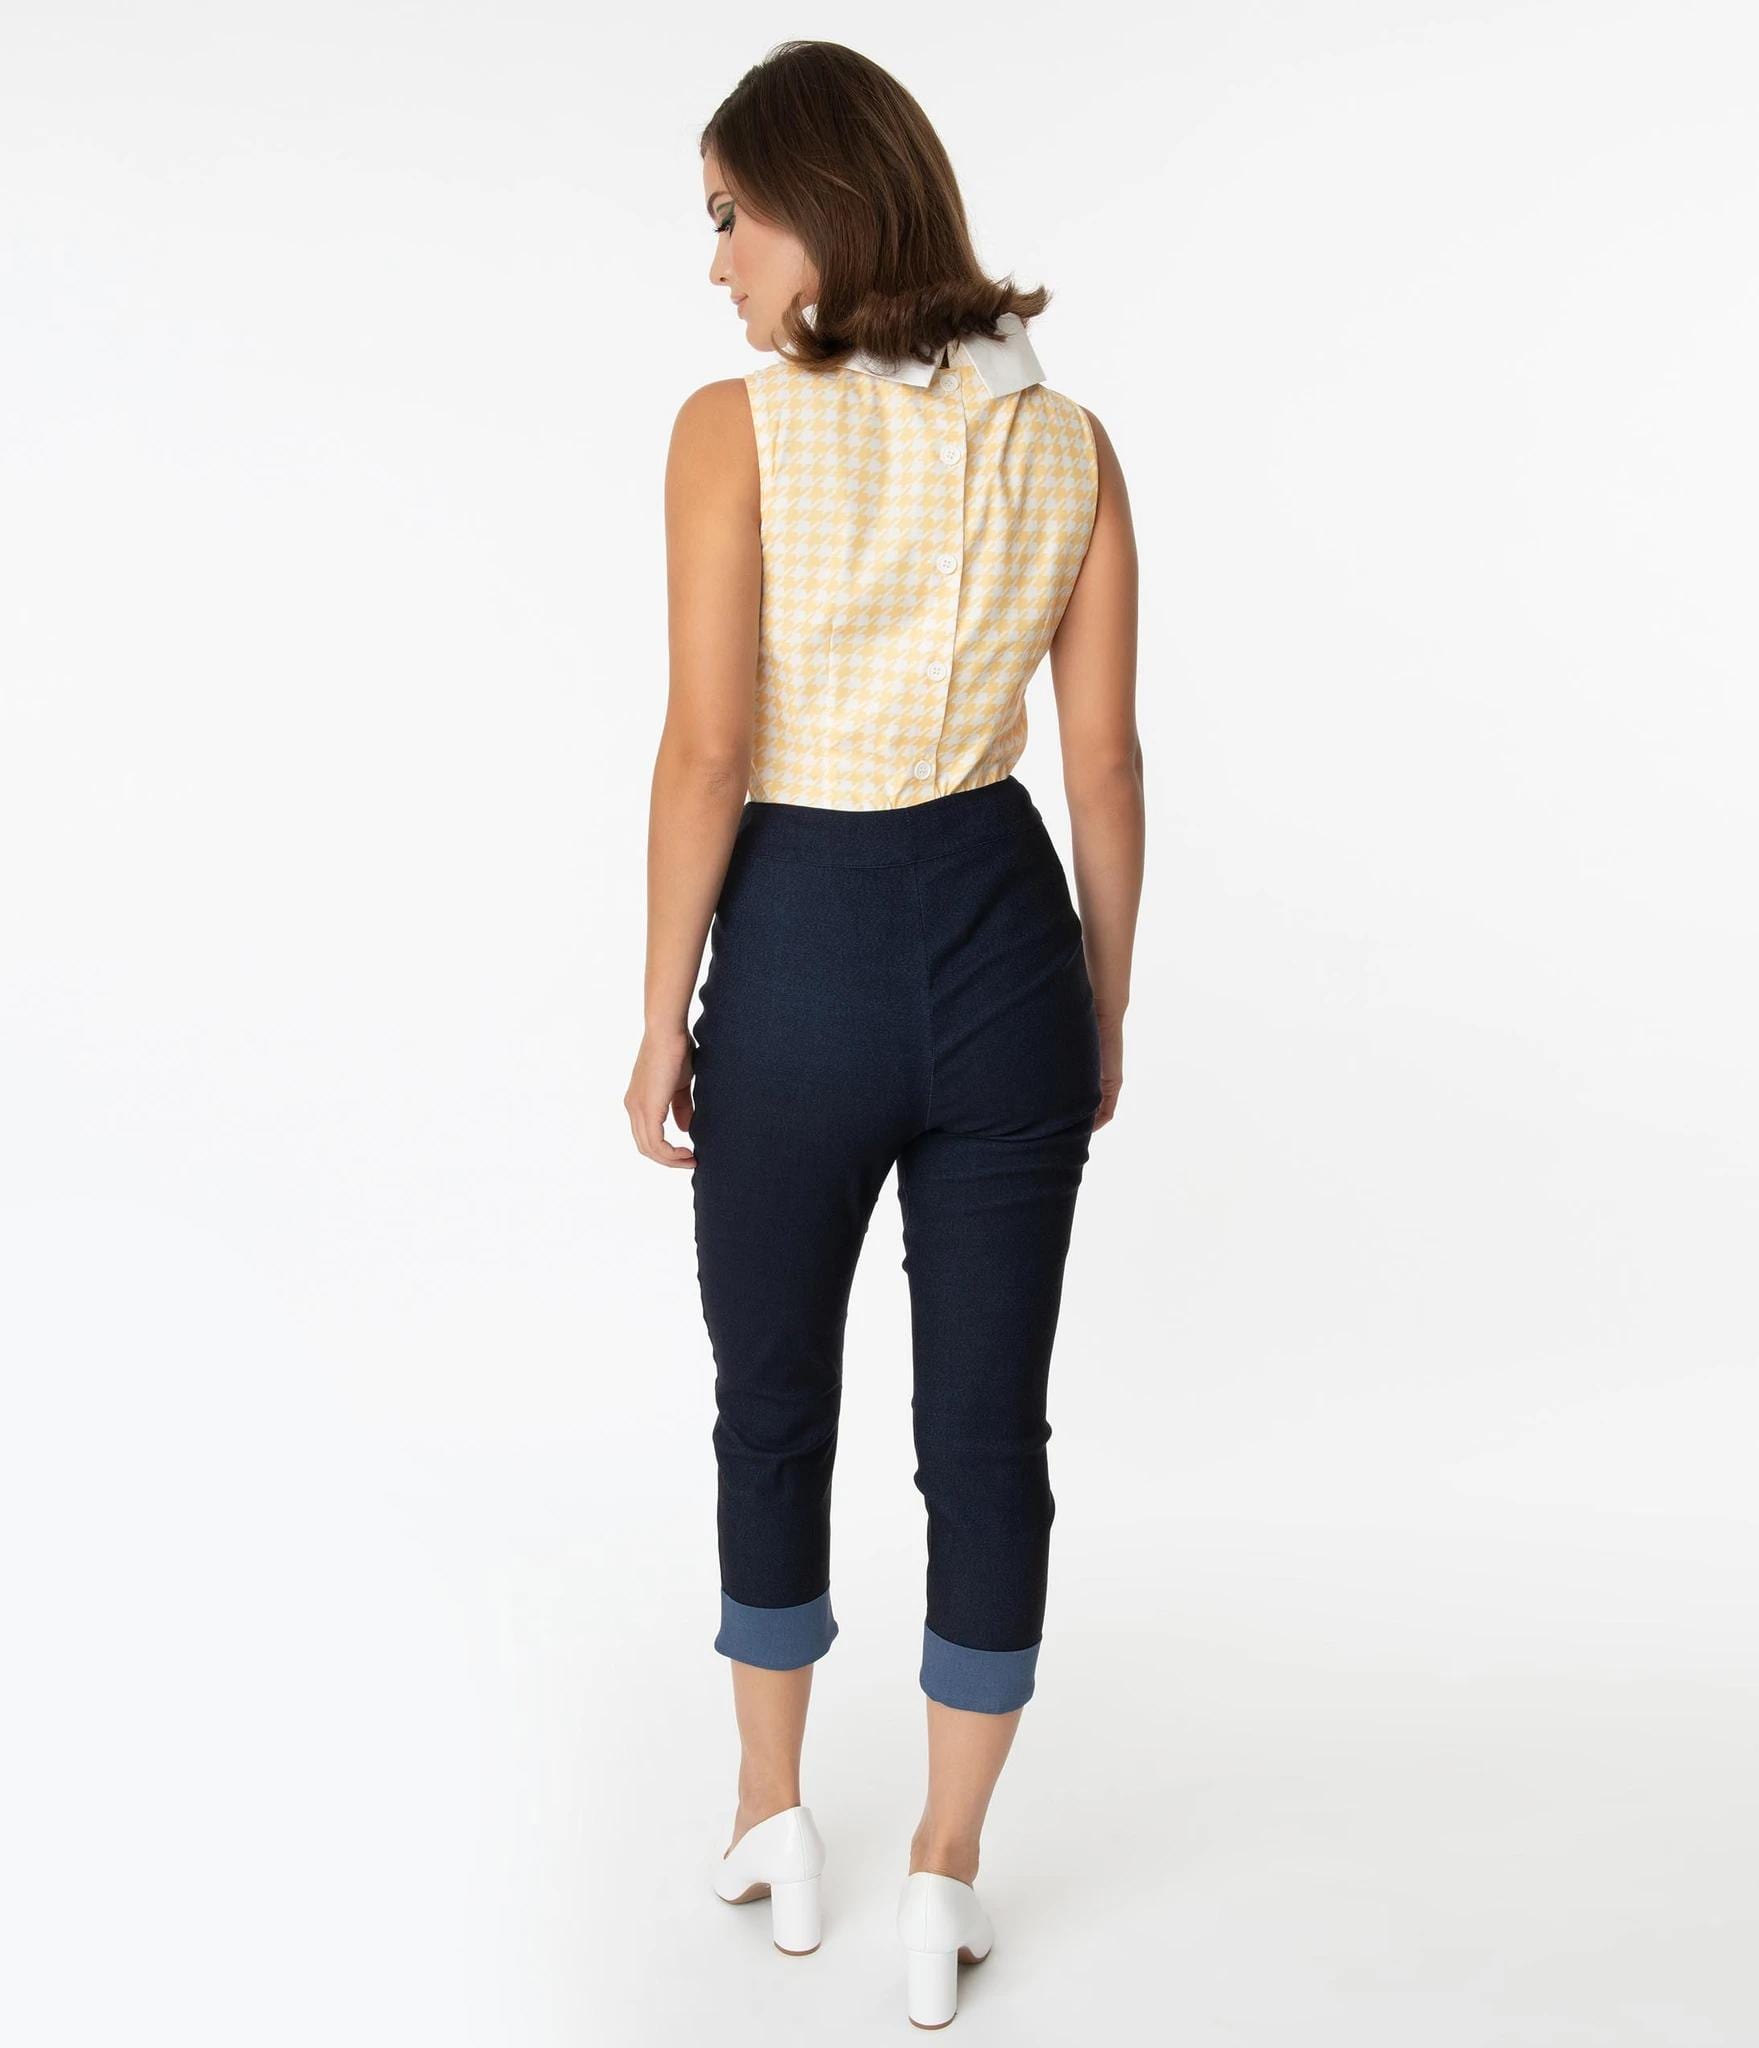 Lolmot Woman Fashion Drawstring Pockets Elastic Waist Printing Capris Pants  